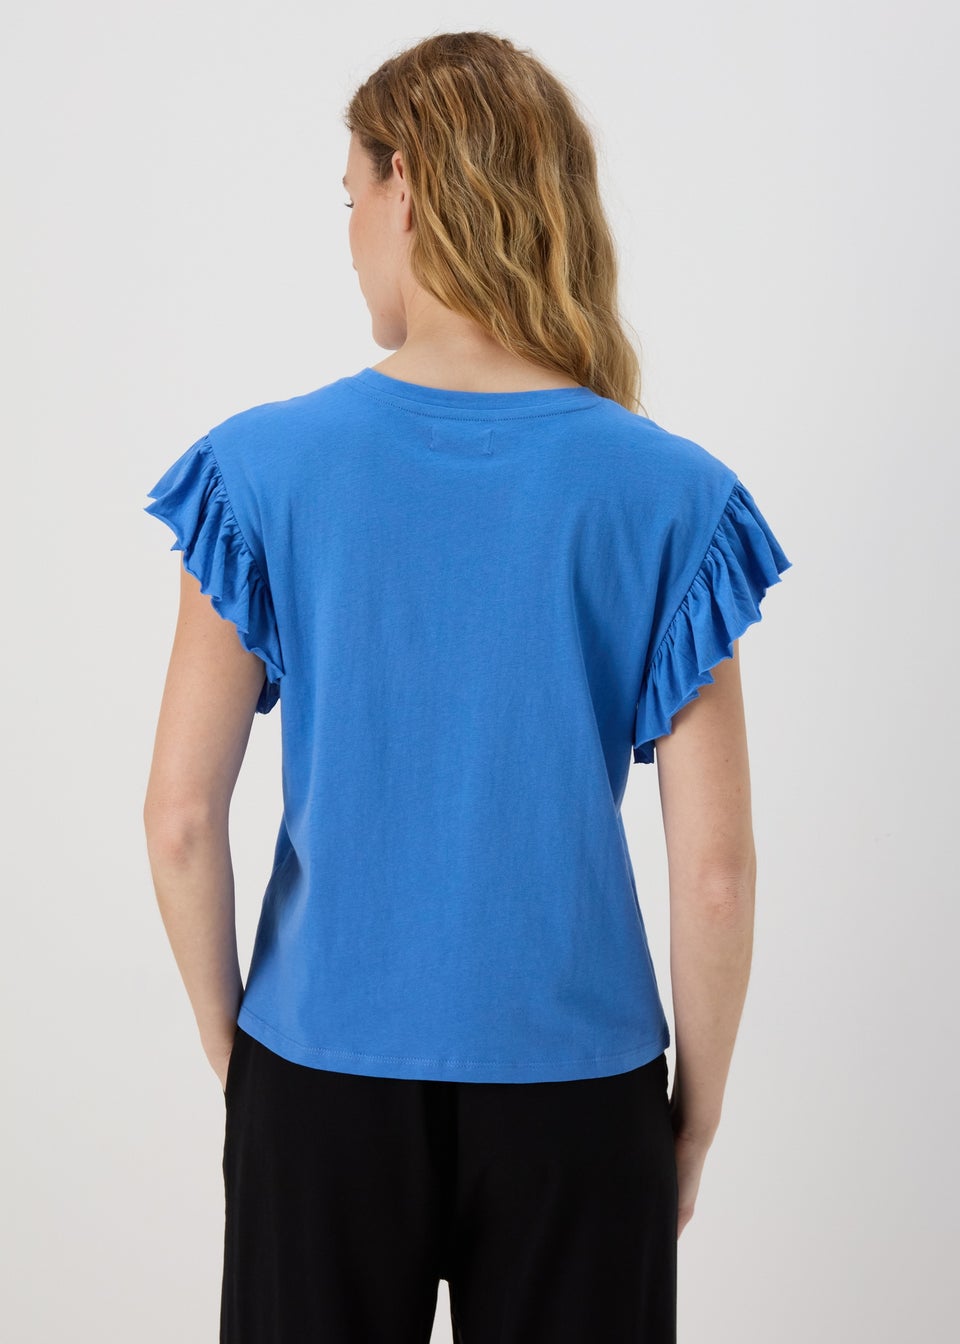 Blue Frill Sleeve T-Shirt